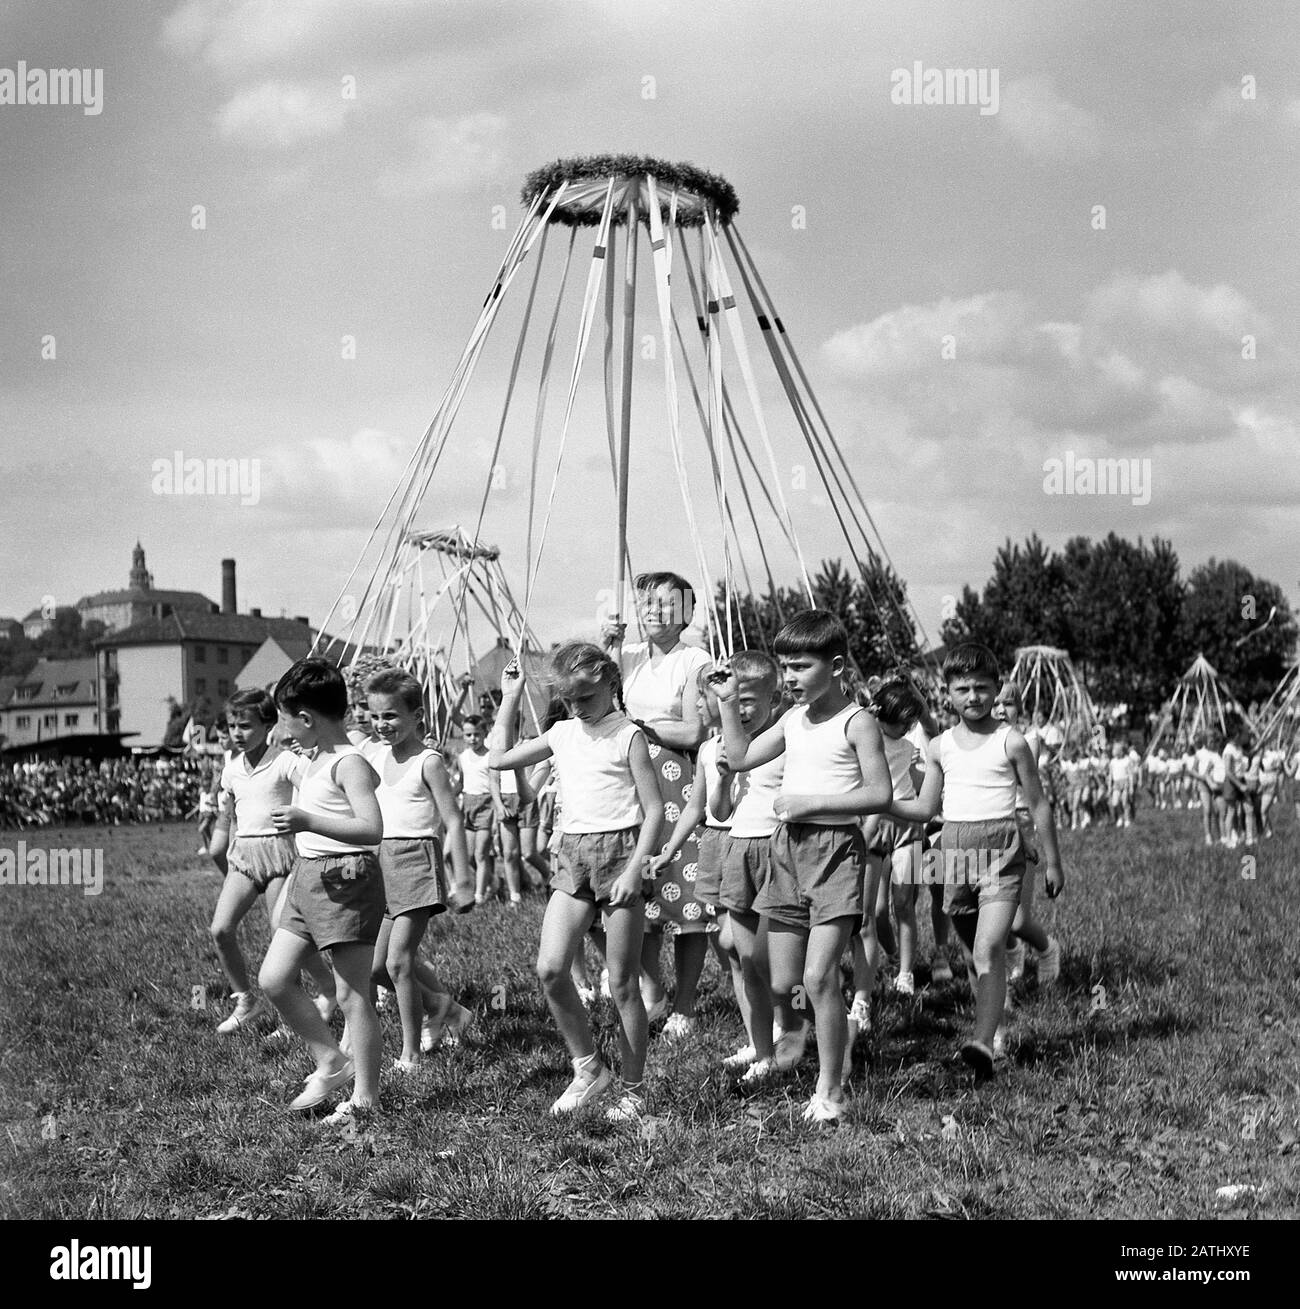 Spartakiad in Nachod, Tschechoslowakei 1959. Vorstellung der Schüler von 6 - 8 Jahren. Die staatliche Massenschau fand 1960 in Prag statt, die von der kommunistischen Regierung abgehalten wurde. Stockfoto